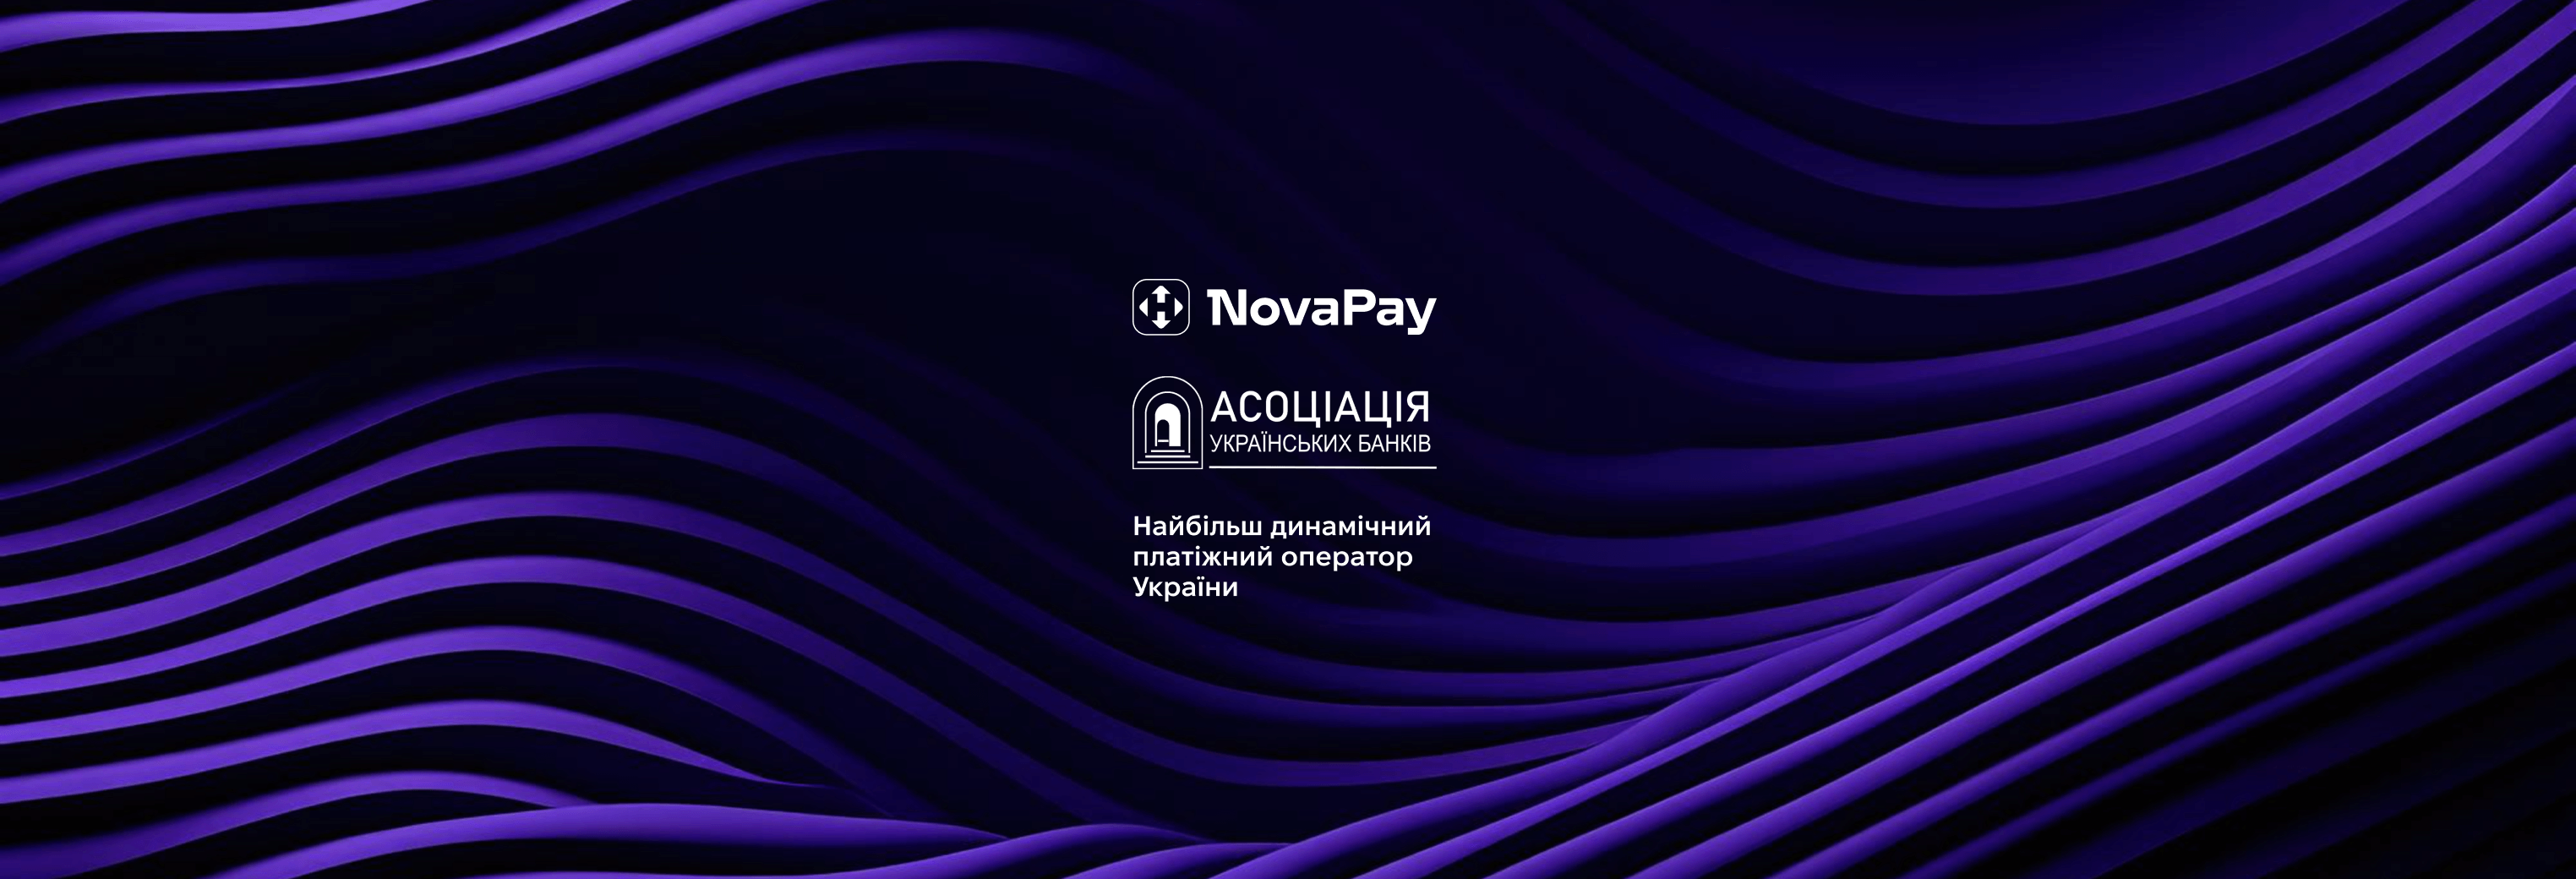 NovaPay – найбільш динамічний платіжний оператор України